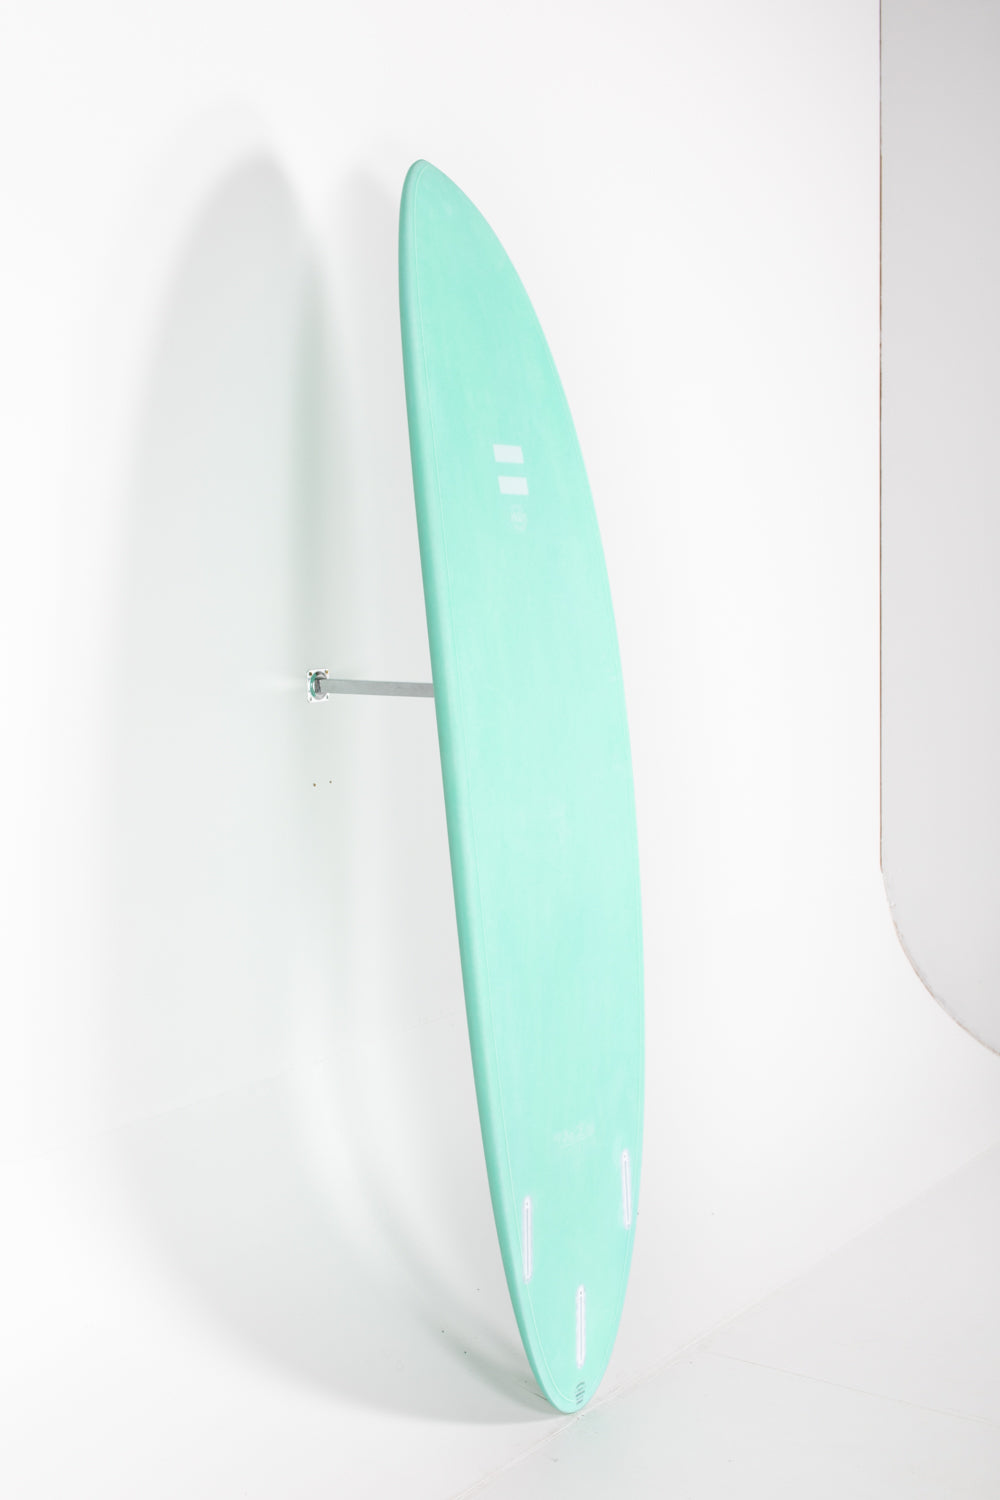 
                  
                    Pukas Surf Shop - Indio Endurance - THE EGG Aqua Mint - 8'2" x 23 1/2 x 3 1/8 - 69,6L
                  
                